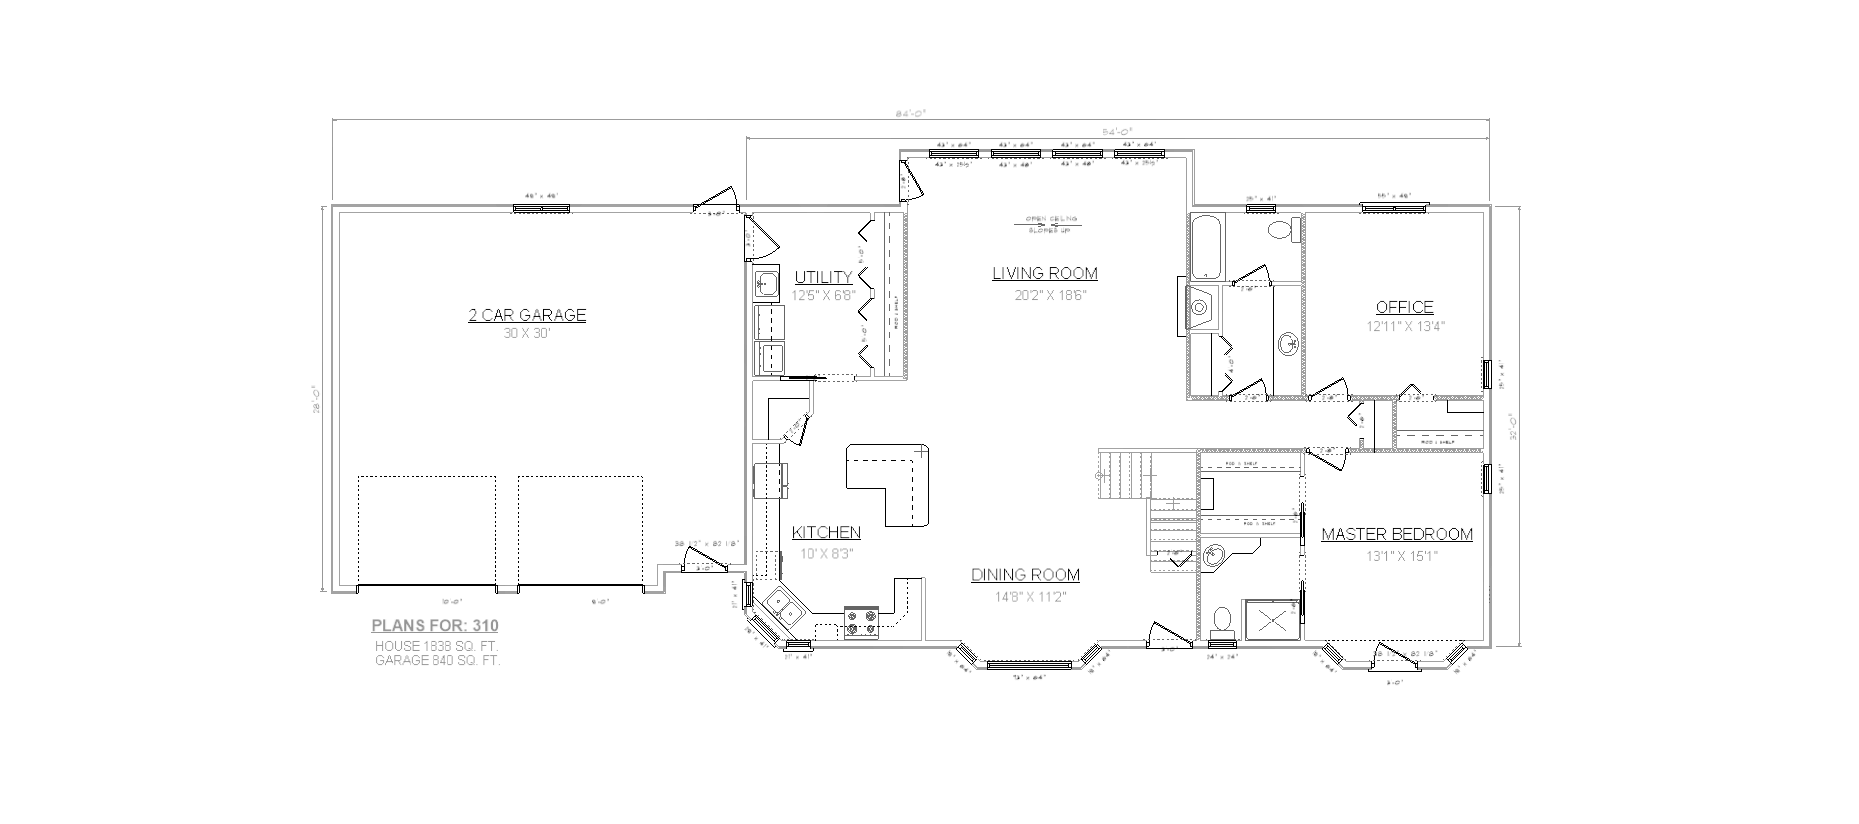 Penner Homes Floor Plan Id: 310